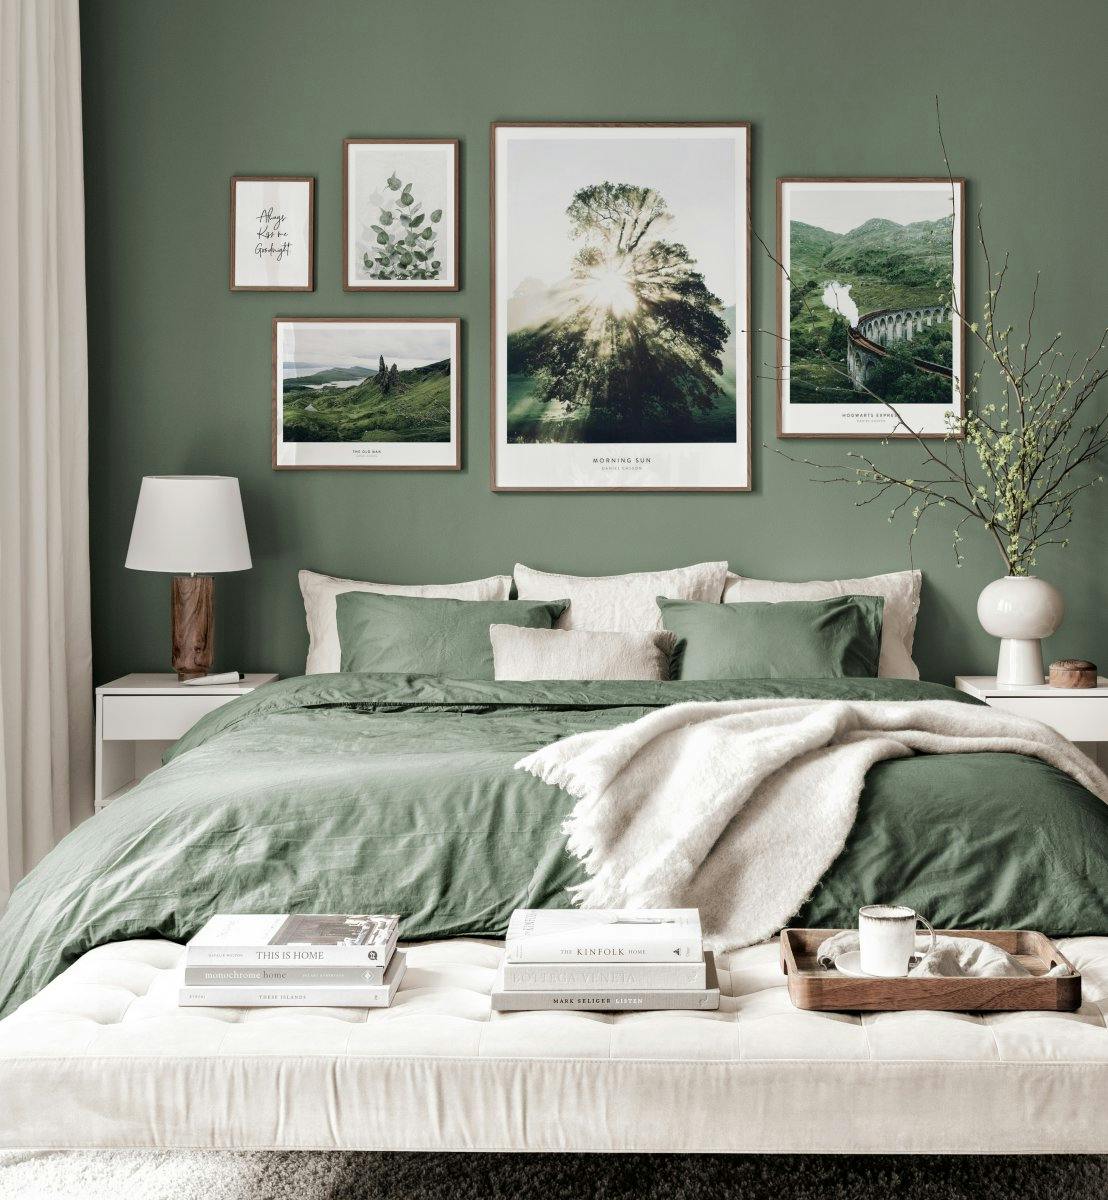 لوحات جدار التصميم الداخلي على الطراز الاسكتلندي لوحات الطبيعة الخضراء مع إطارات الجوز.